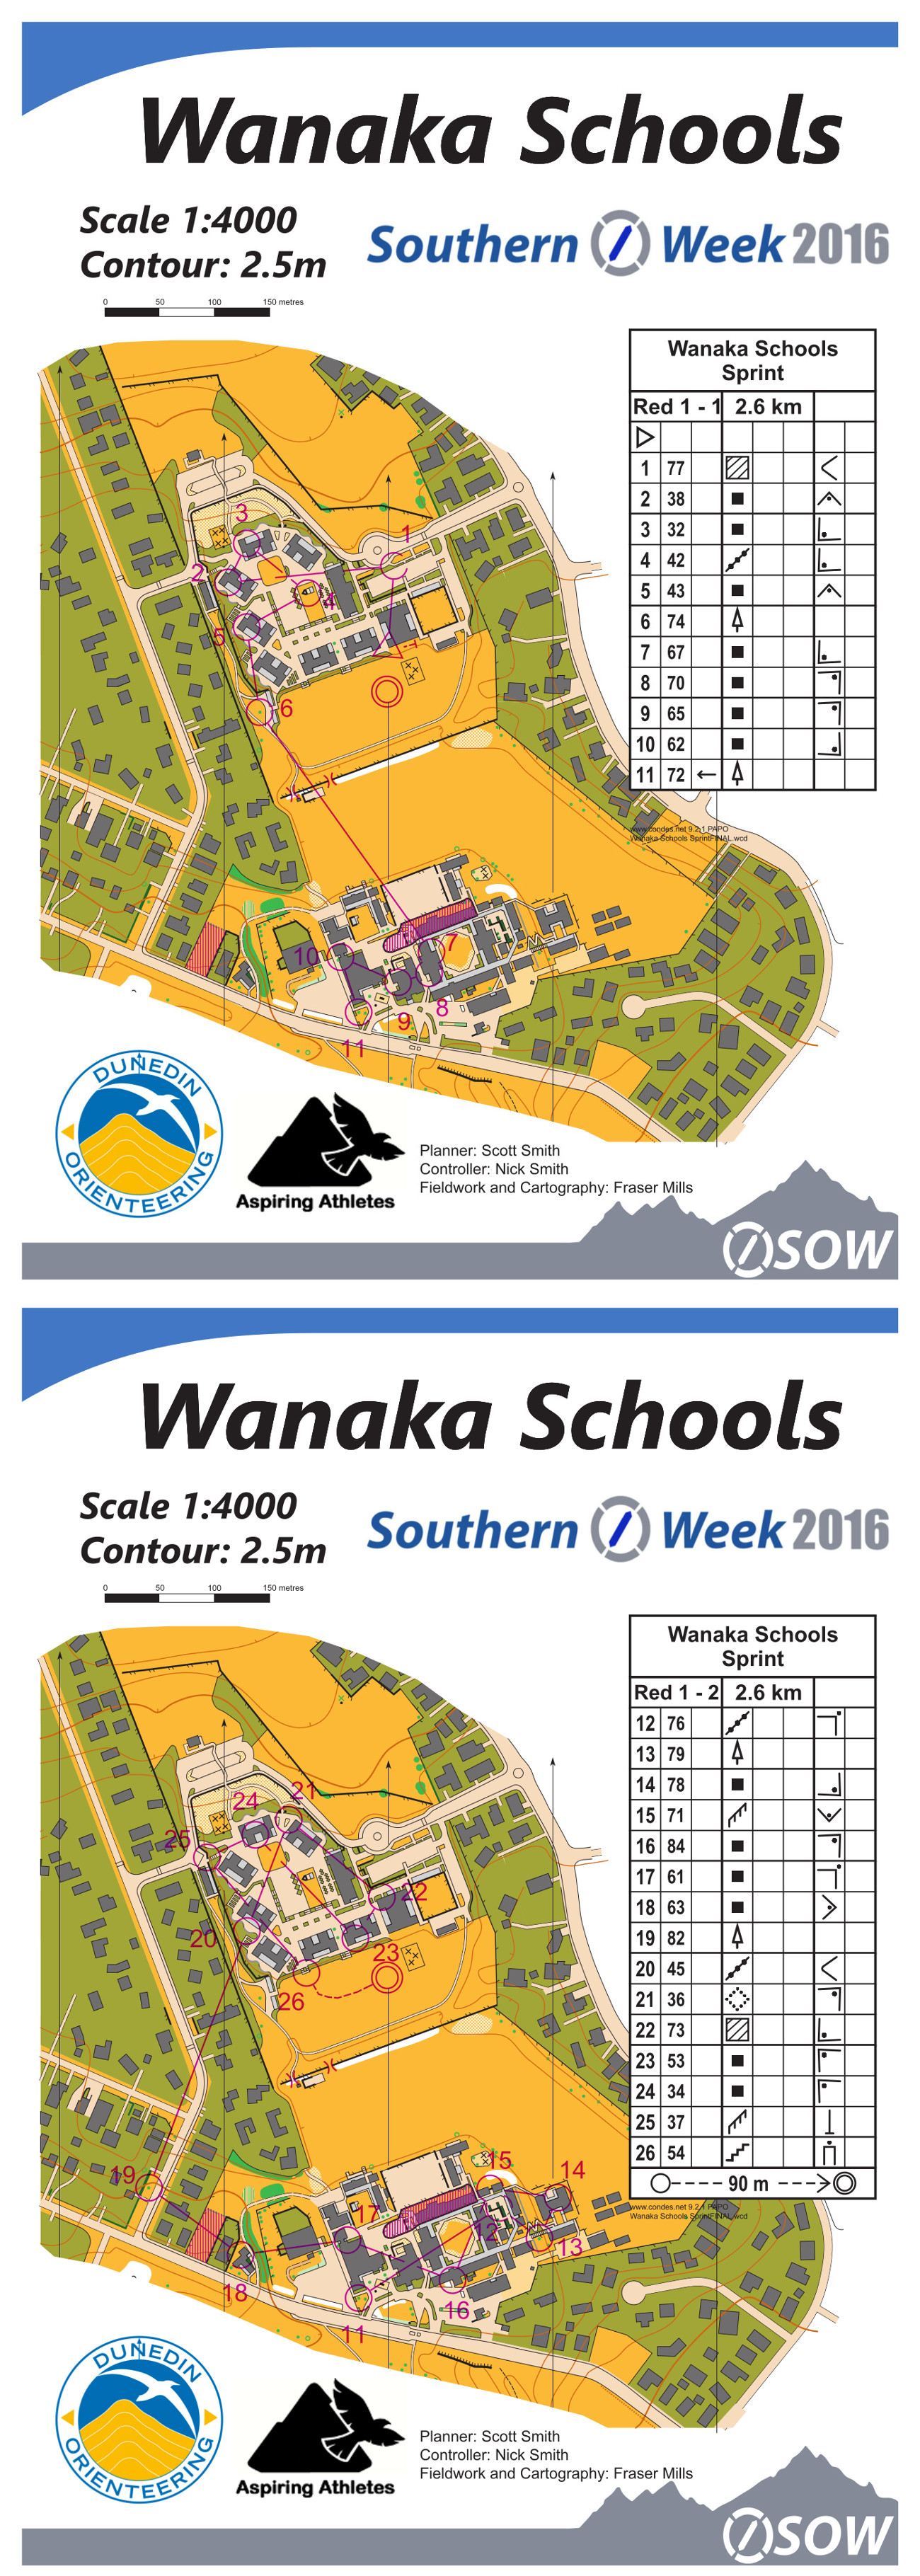 Southern O Week 2016 Day 2 Wanaka Schools (19/01/2016)